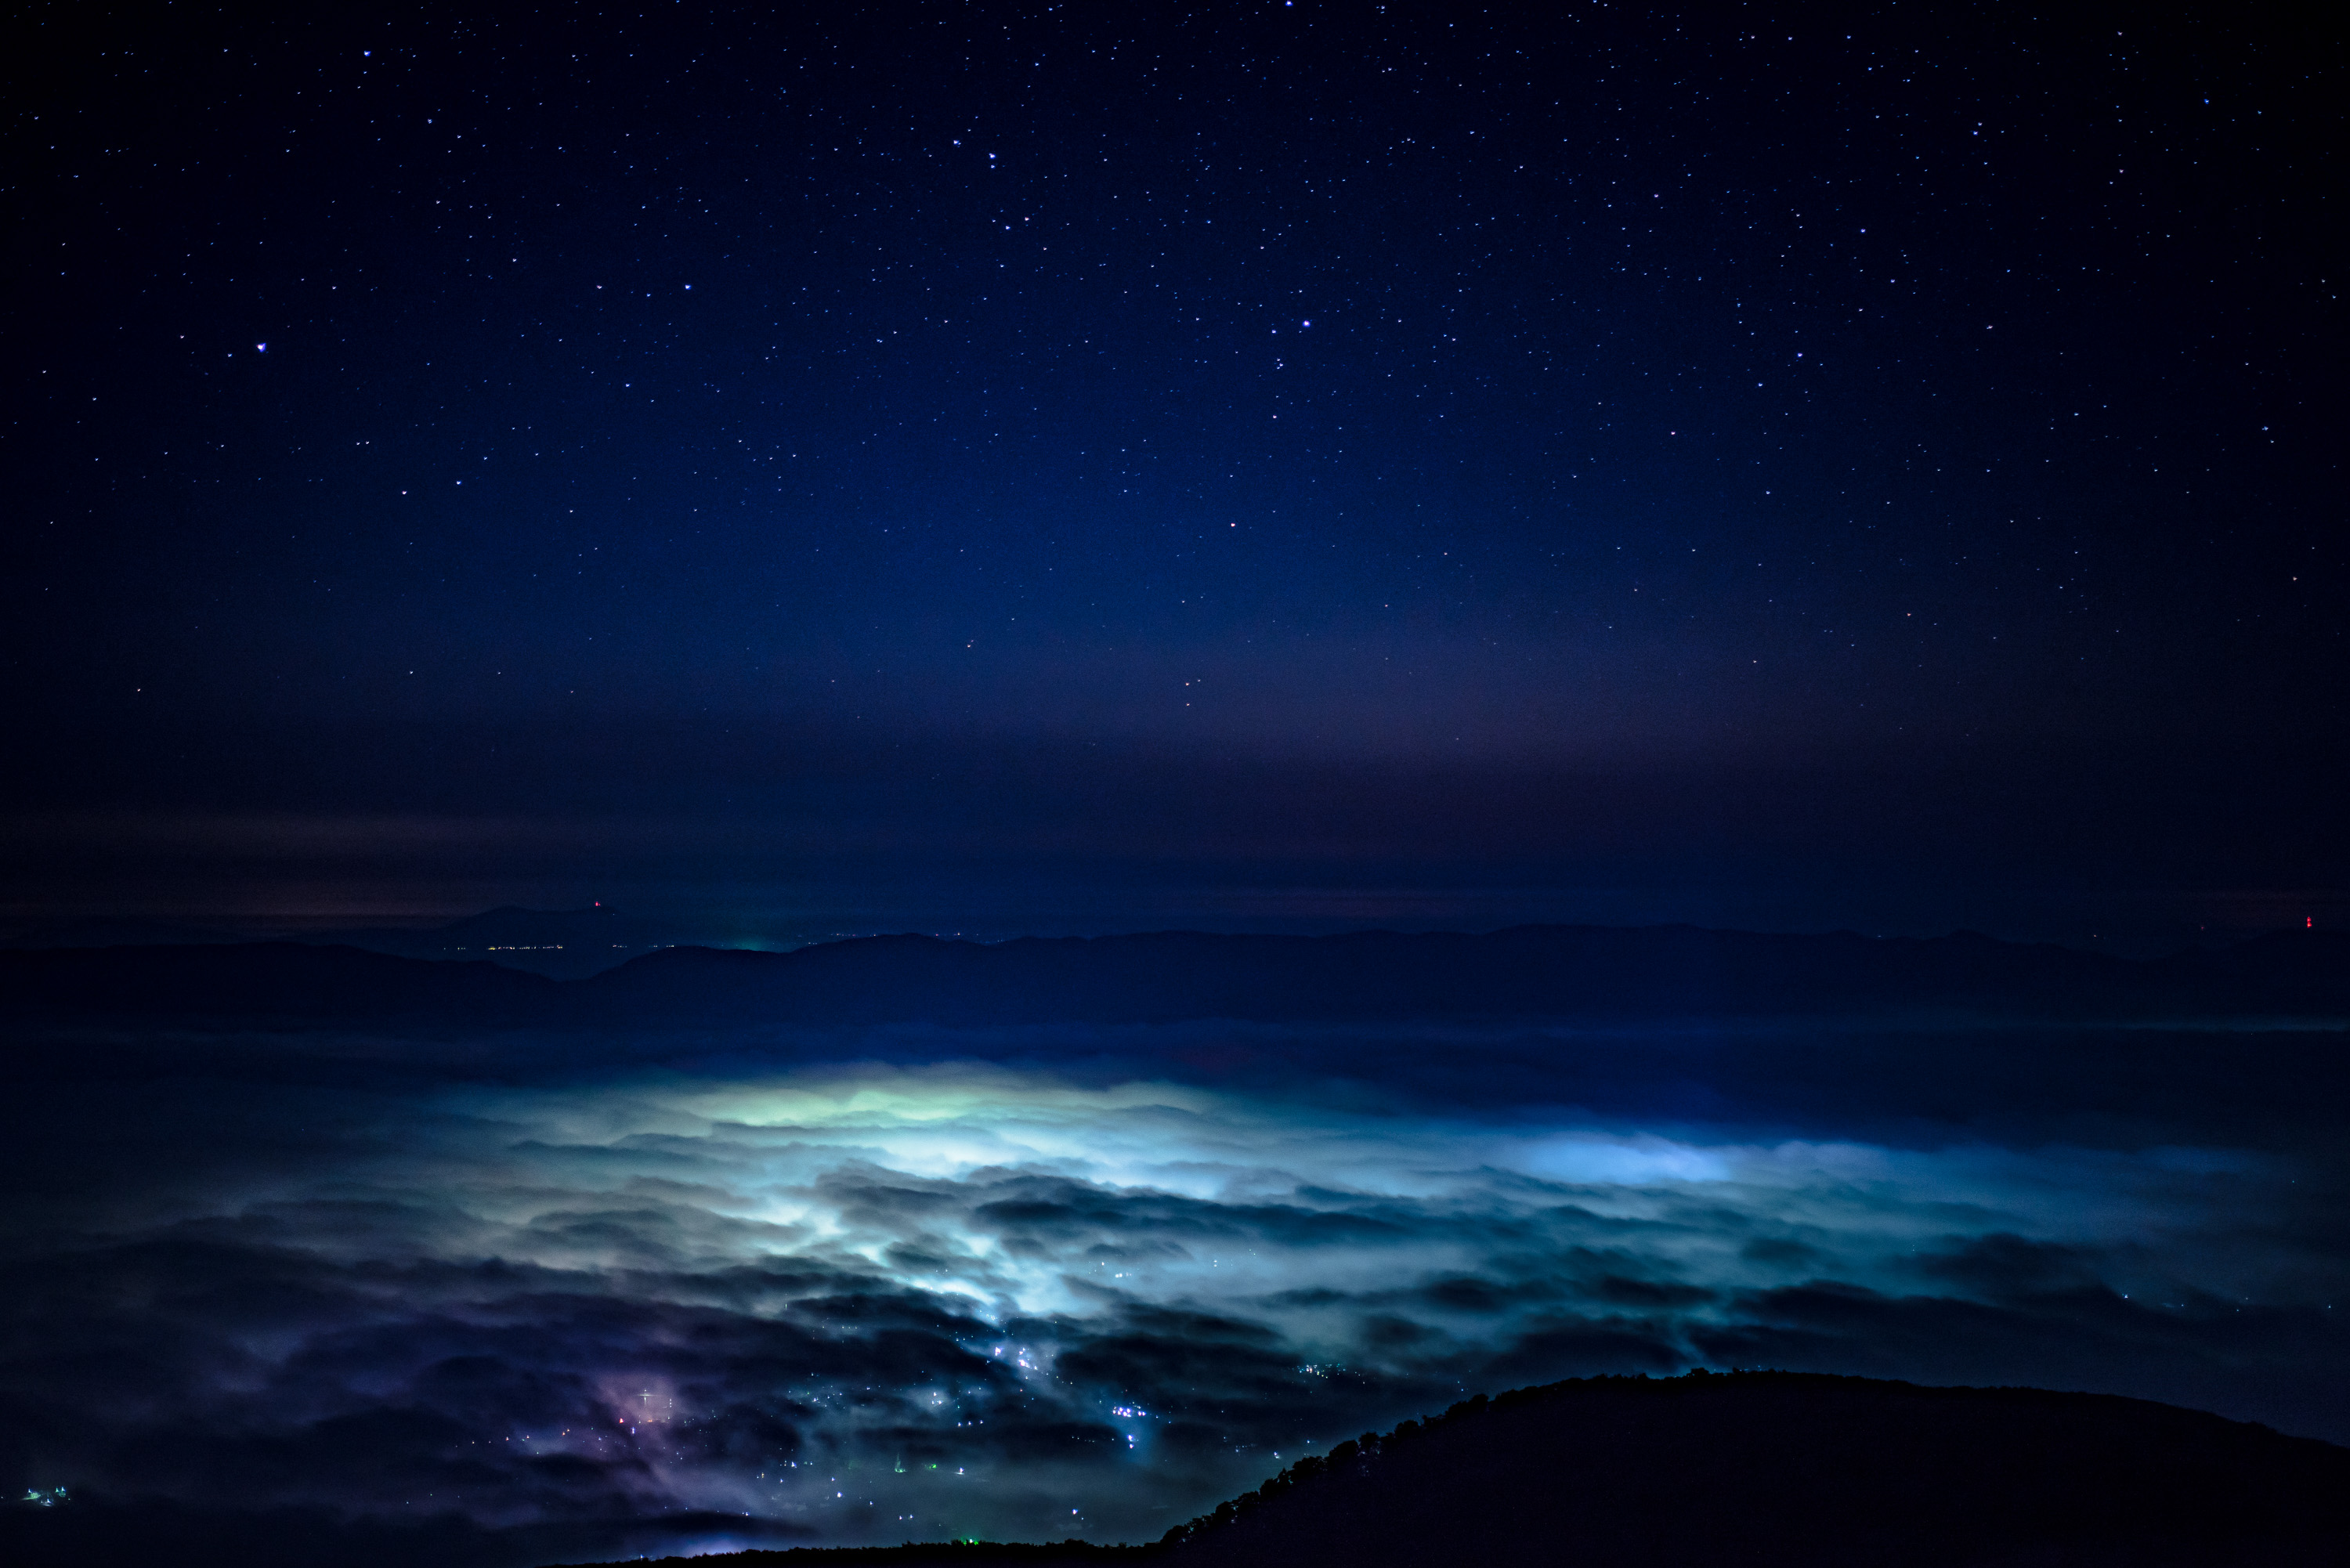 ドンデン山で星空撮影会 眼下に広がる雲海の下の夜景が幻想的過ぎる 旅館番頭の佐渡観光情報ブログ